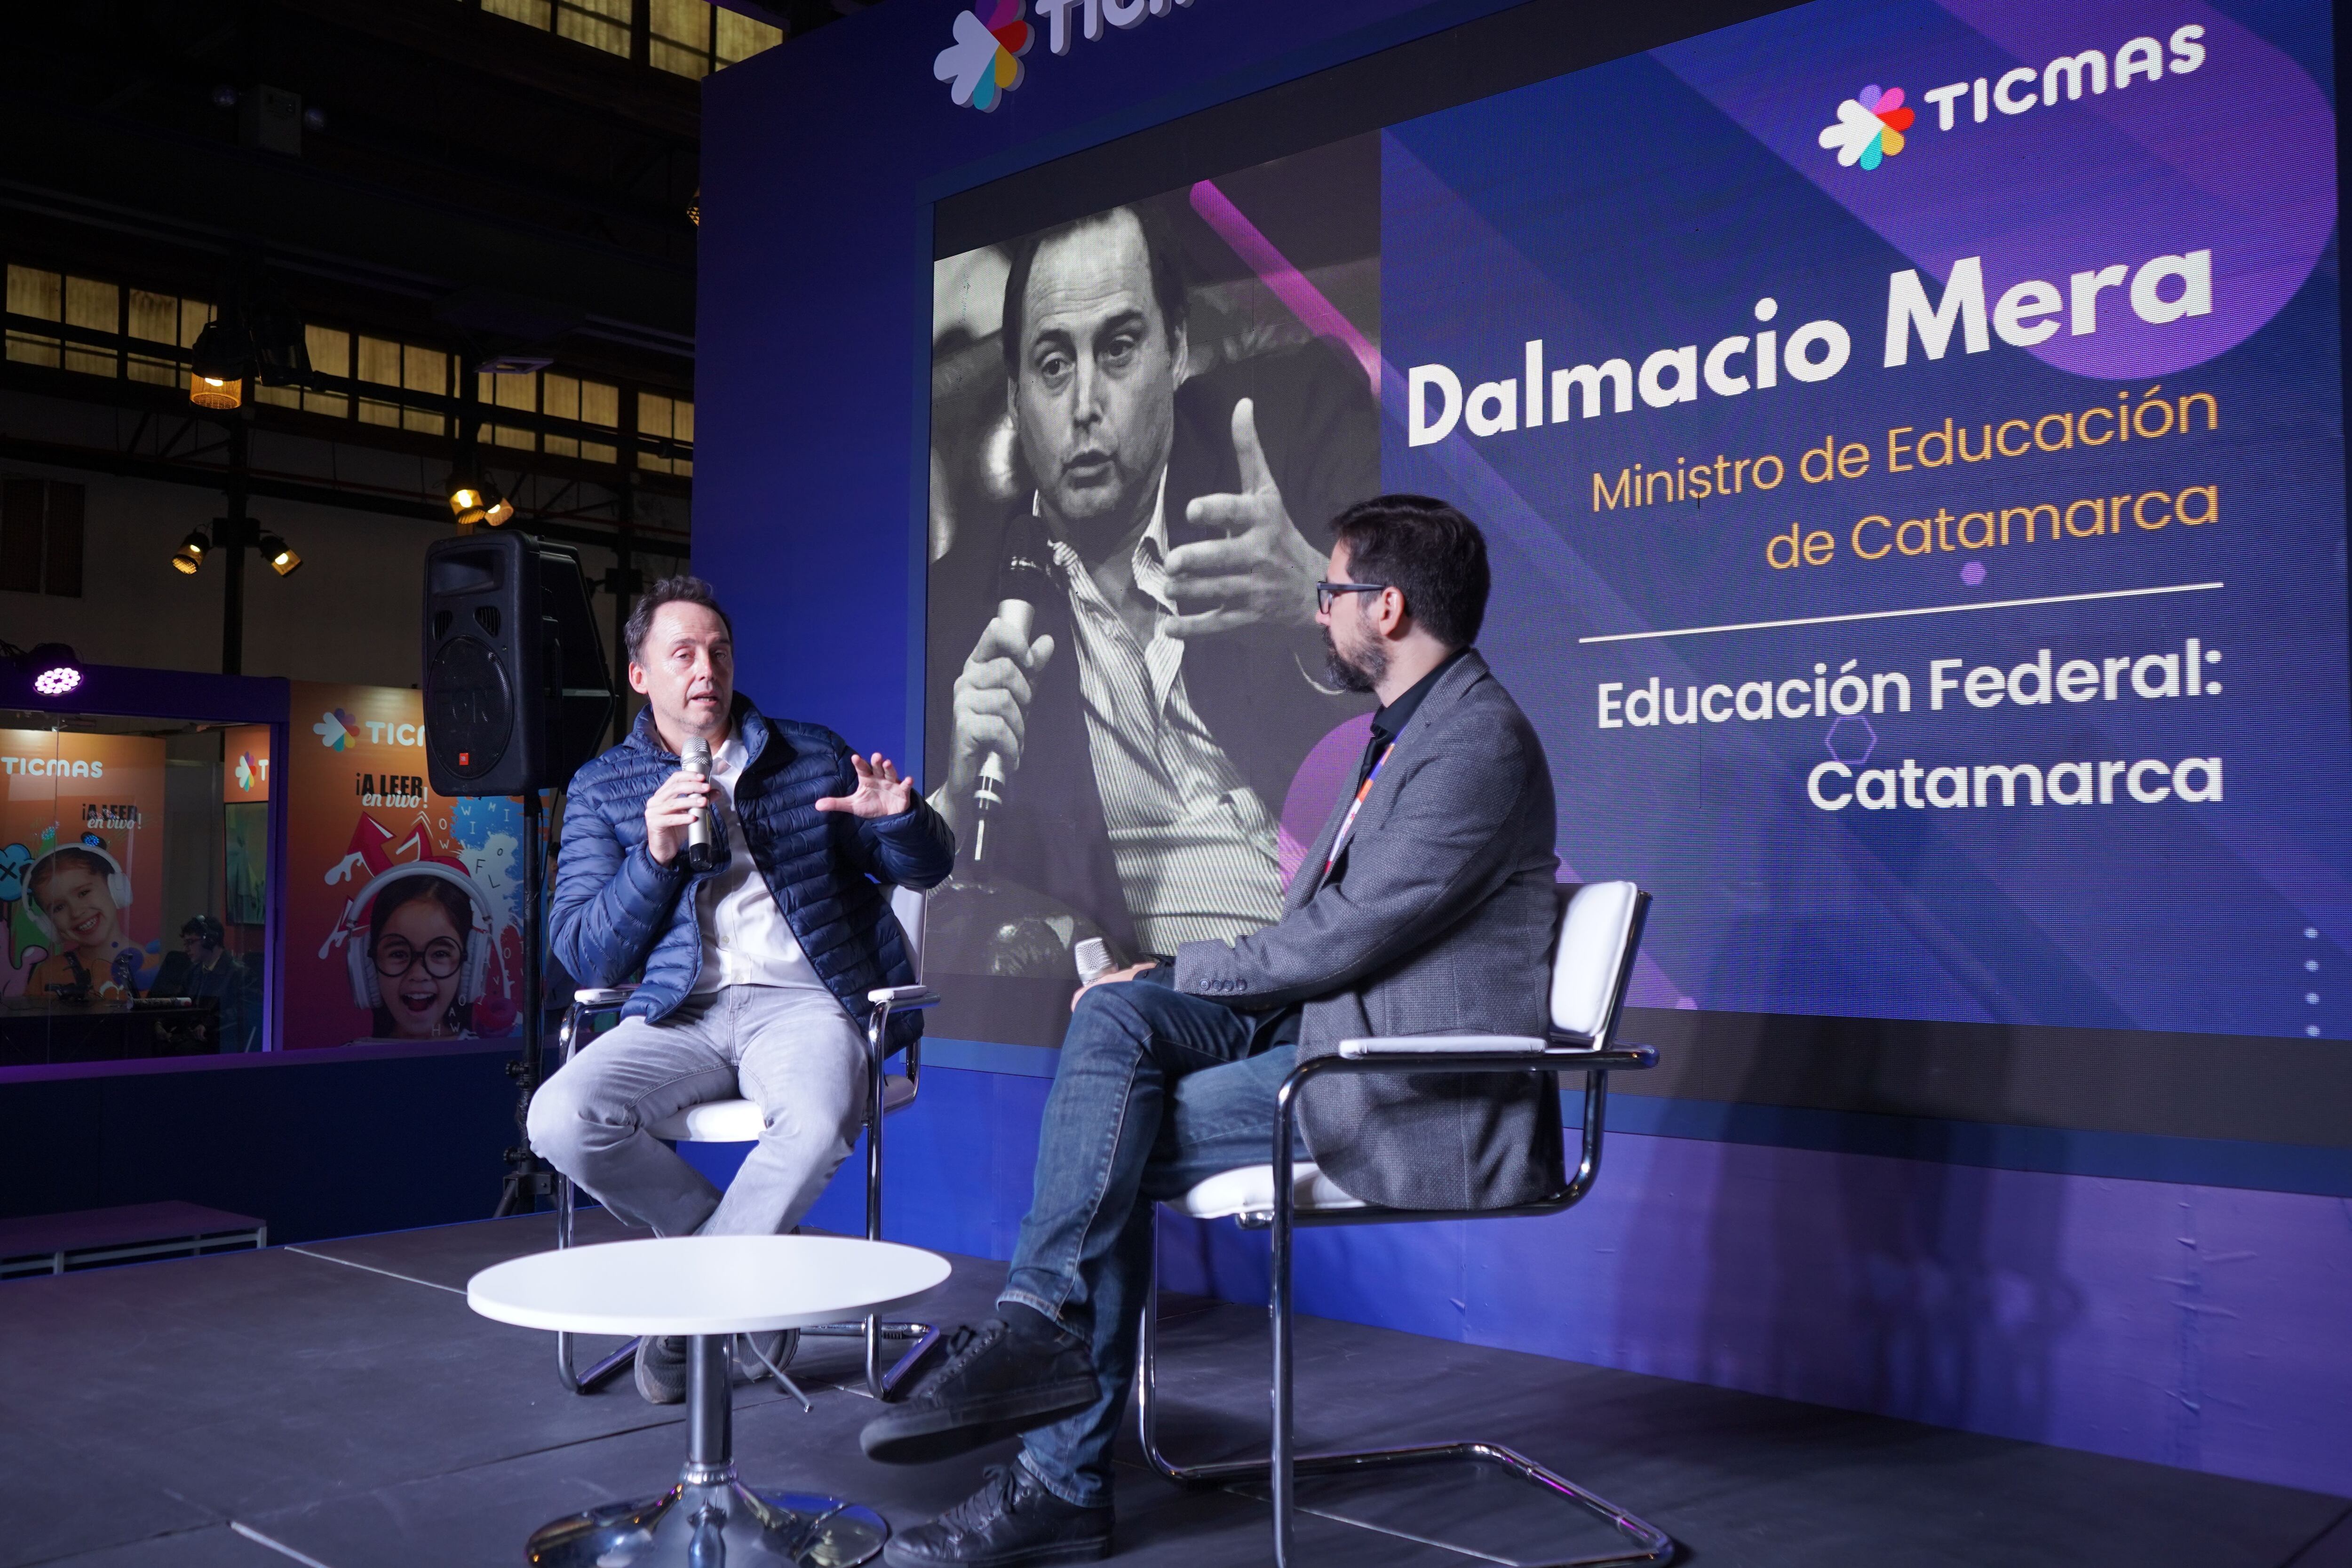 Dalmacio Mera señaló desafíos críticos en el sistema educativo de Catamarca: la deserción escolar y la comprensión lectora (Agustín Brashich/Ticmas)